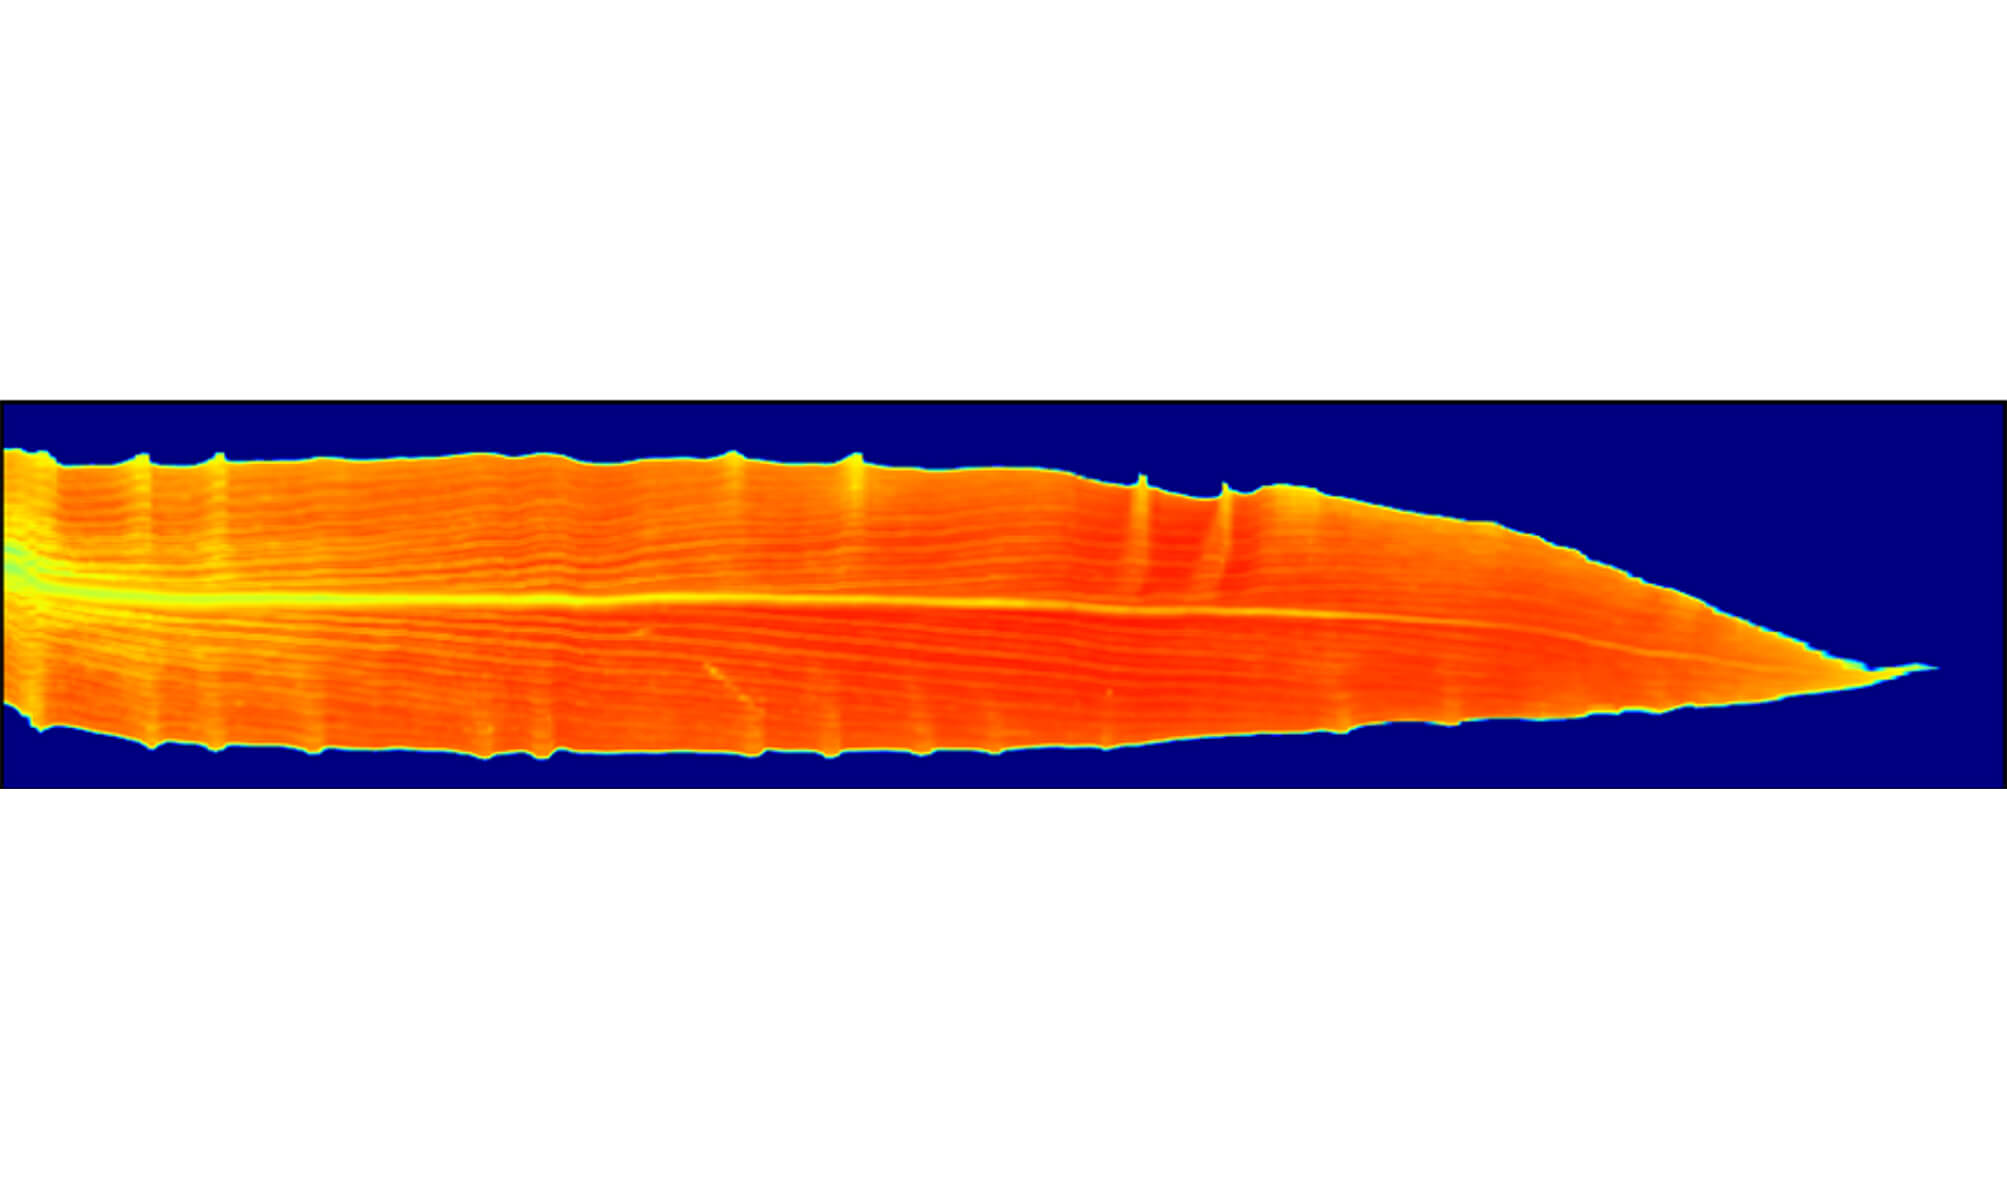 NDVI heat map of a corn leaf (Provided by Jian Jin)